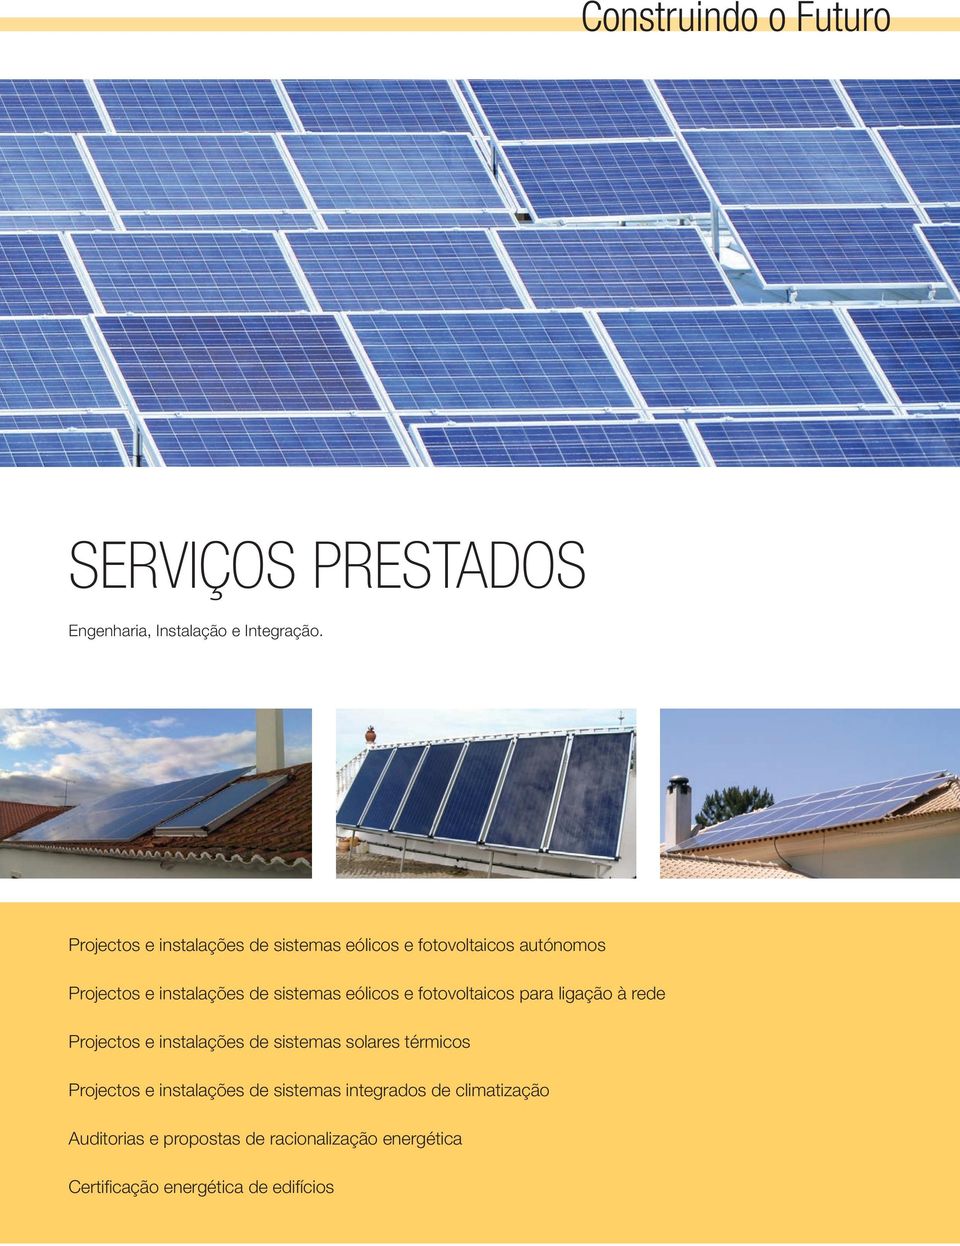 eólicos e fotovoltaicos para ligação à rede Projectos e instalações de sistemas solares térmicos Projectos